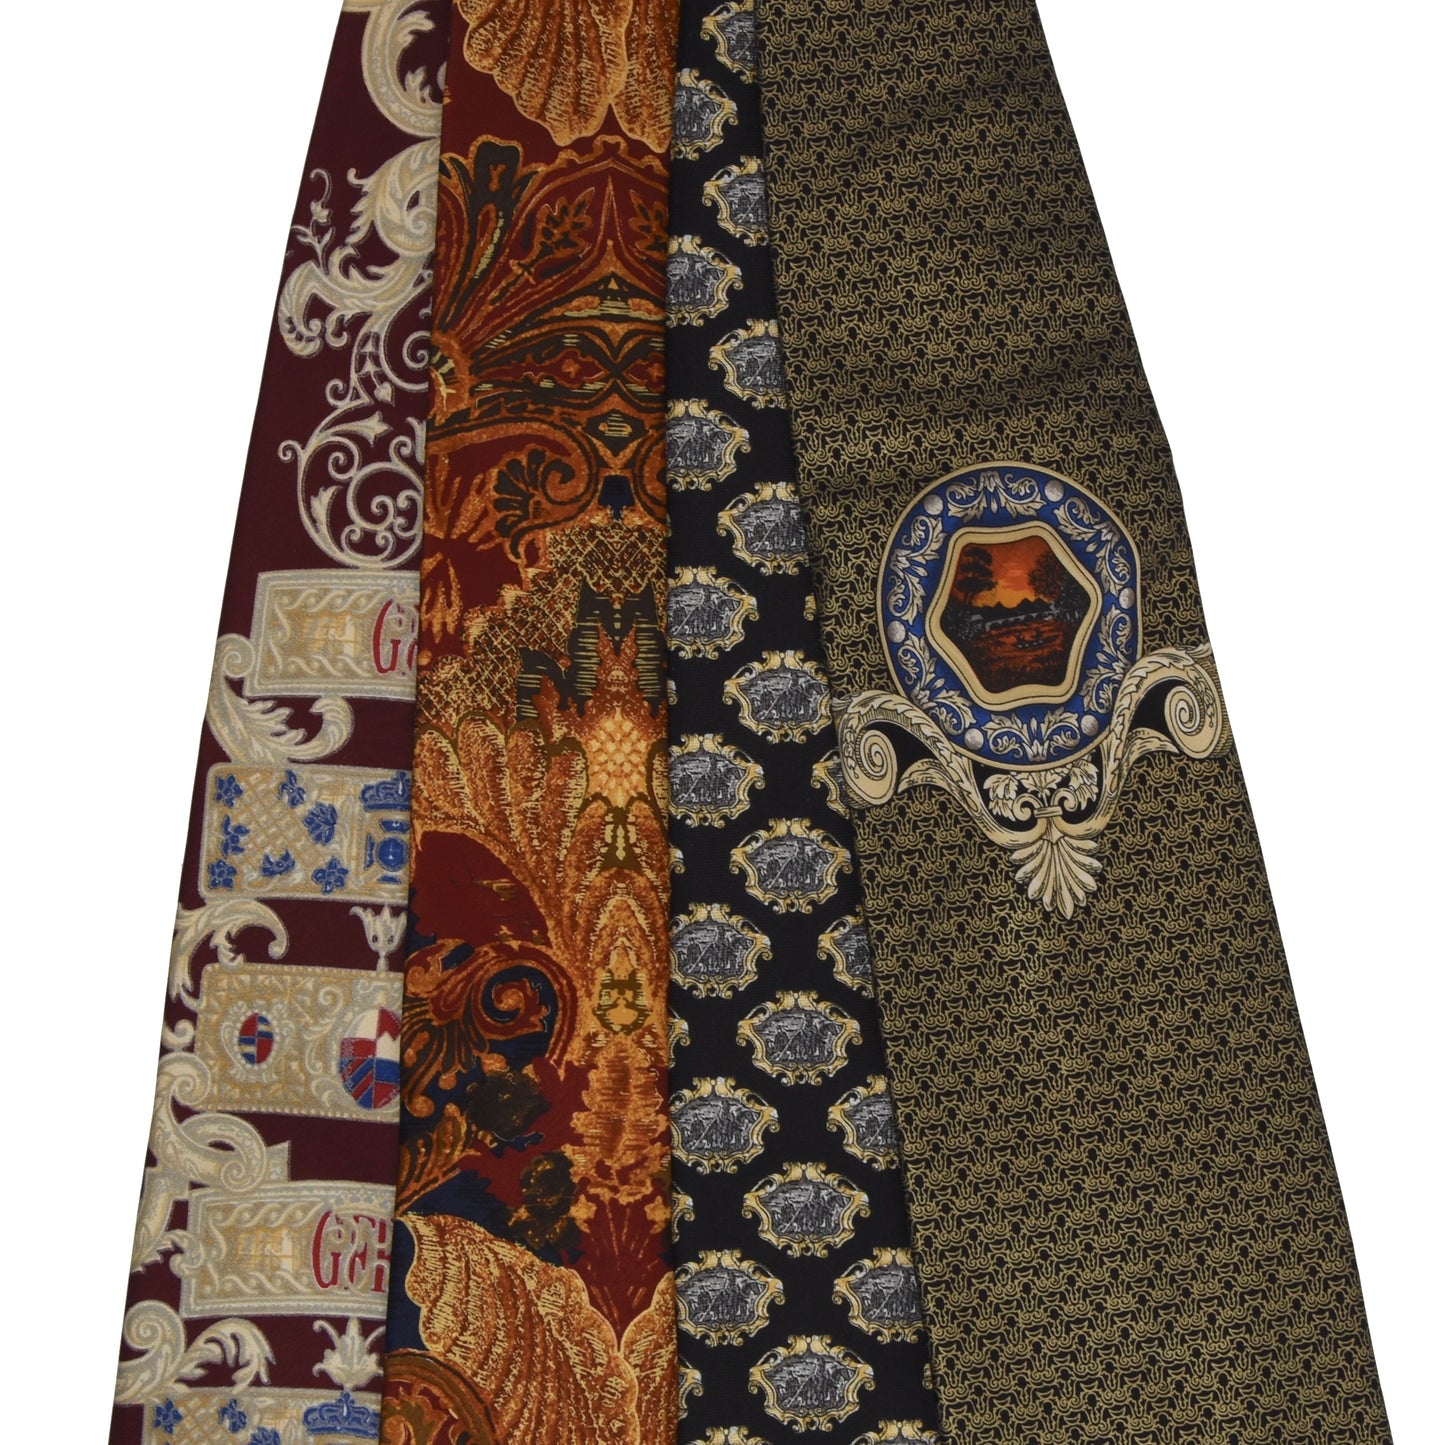 4x Vintage Gianfranco Ferré Krawatten